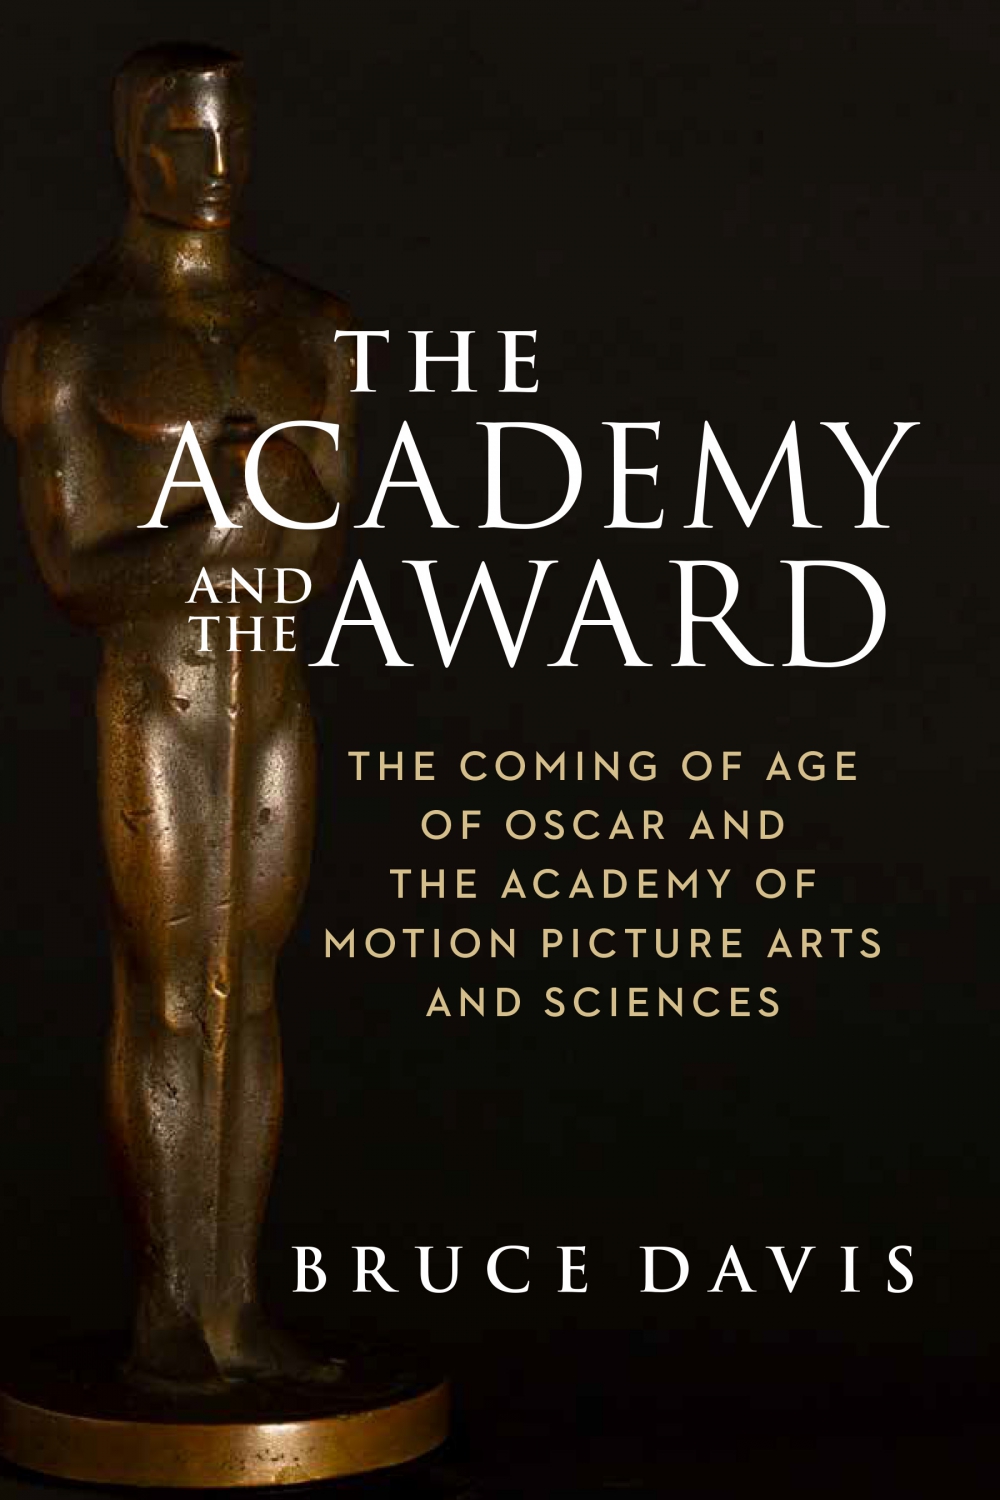 Bruce Davis, The Academy and the Award